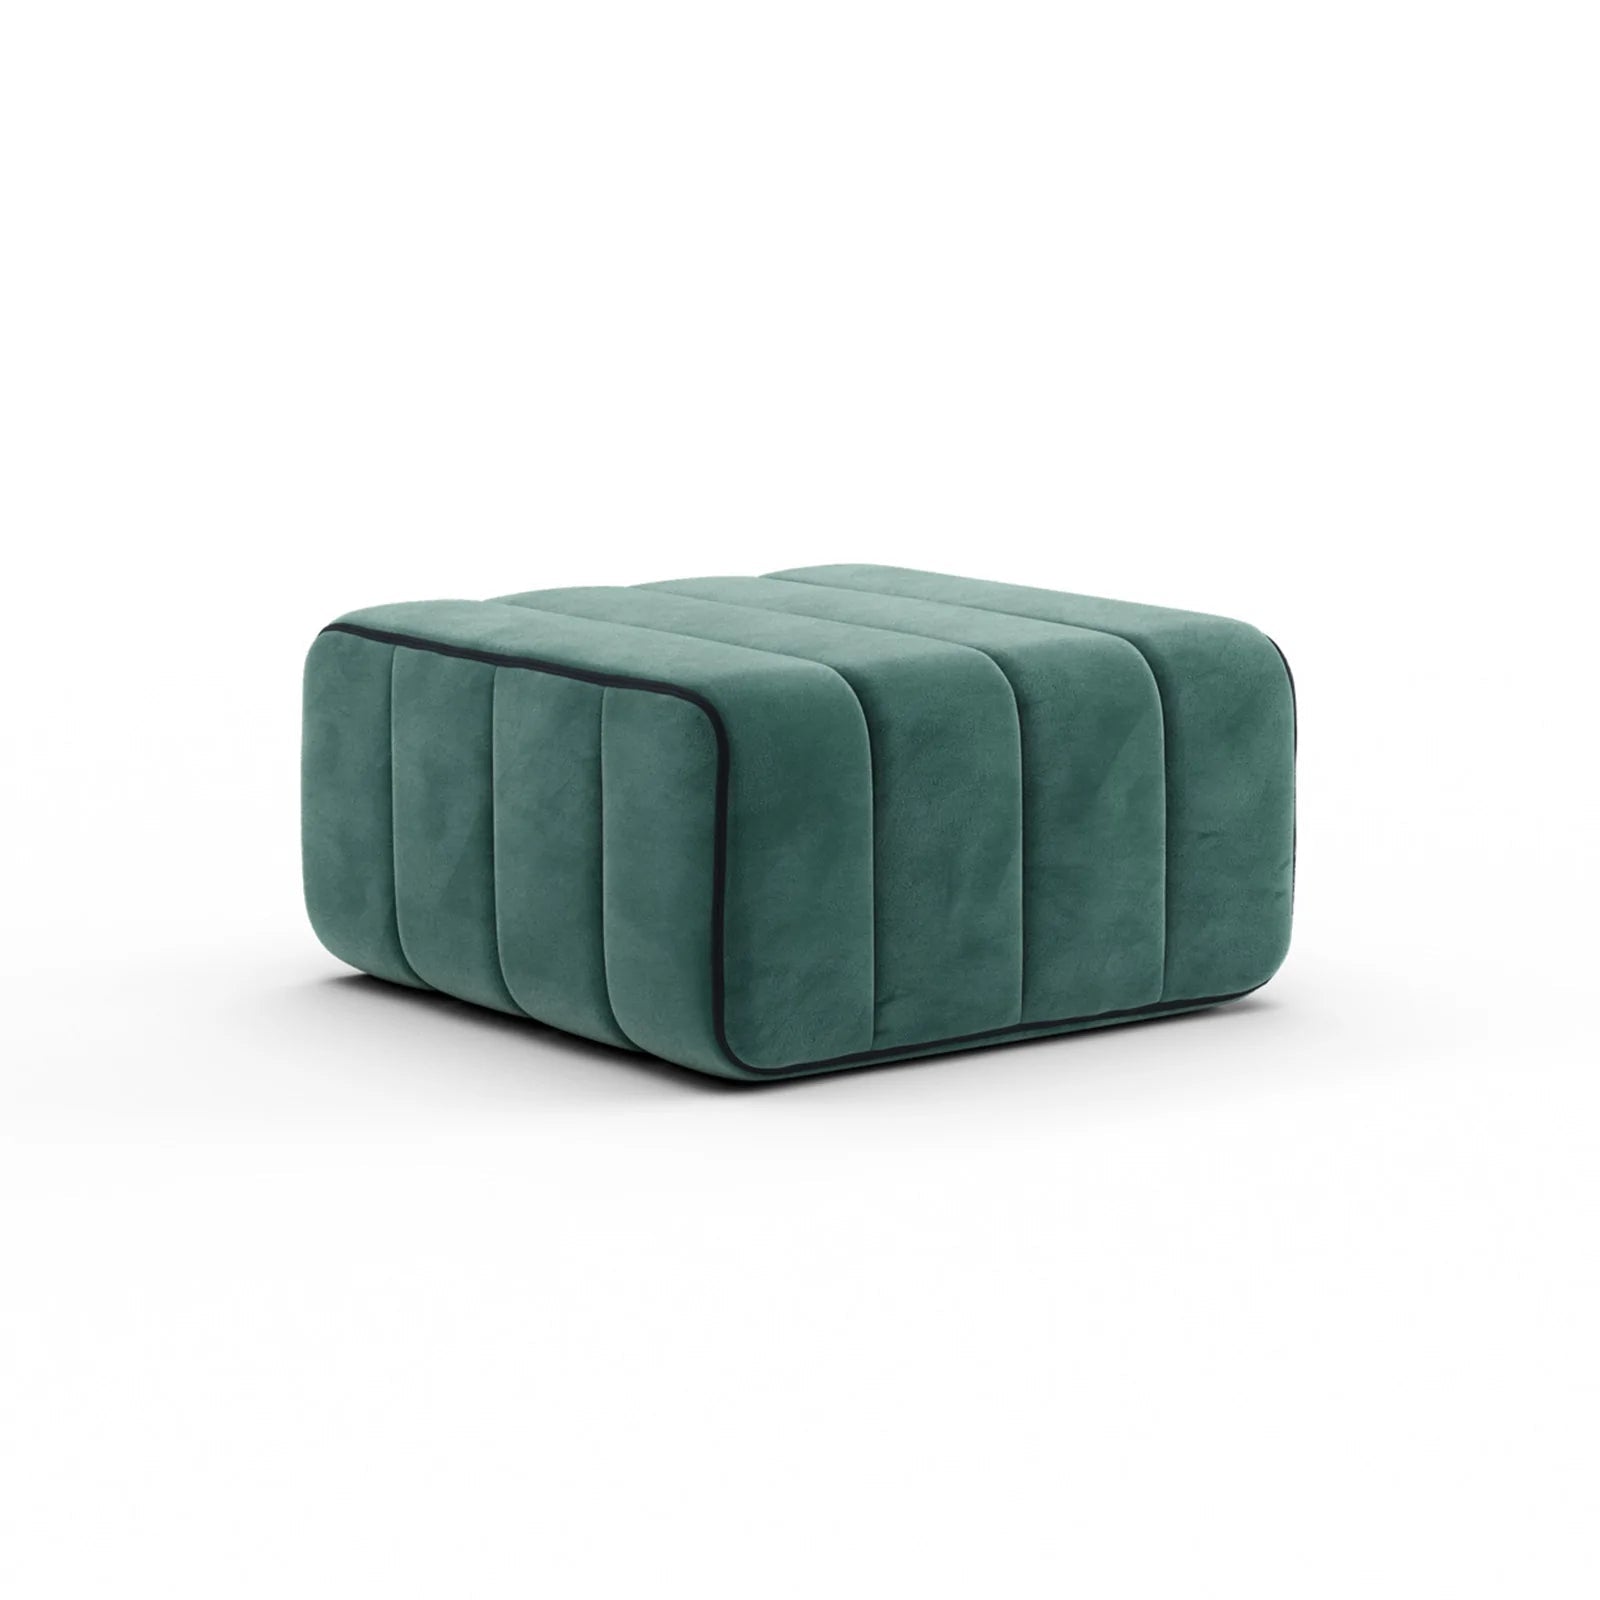 Modular sofa system Curt - Barcelona Serpentine